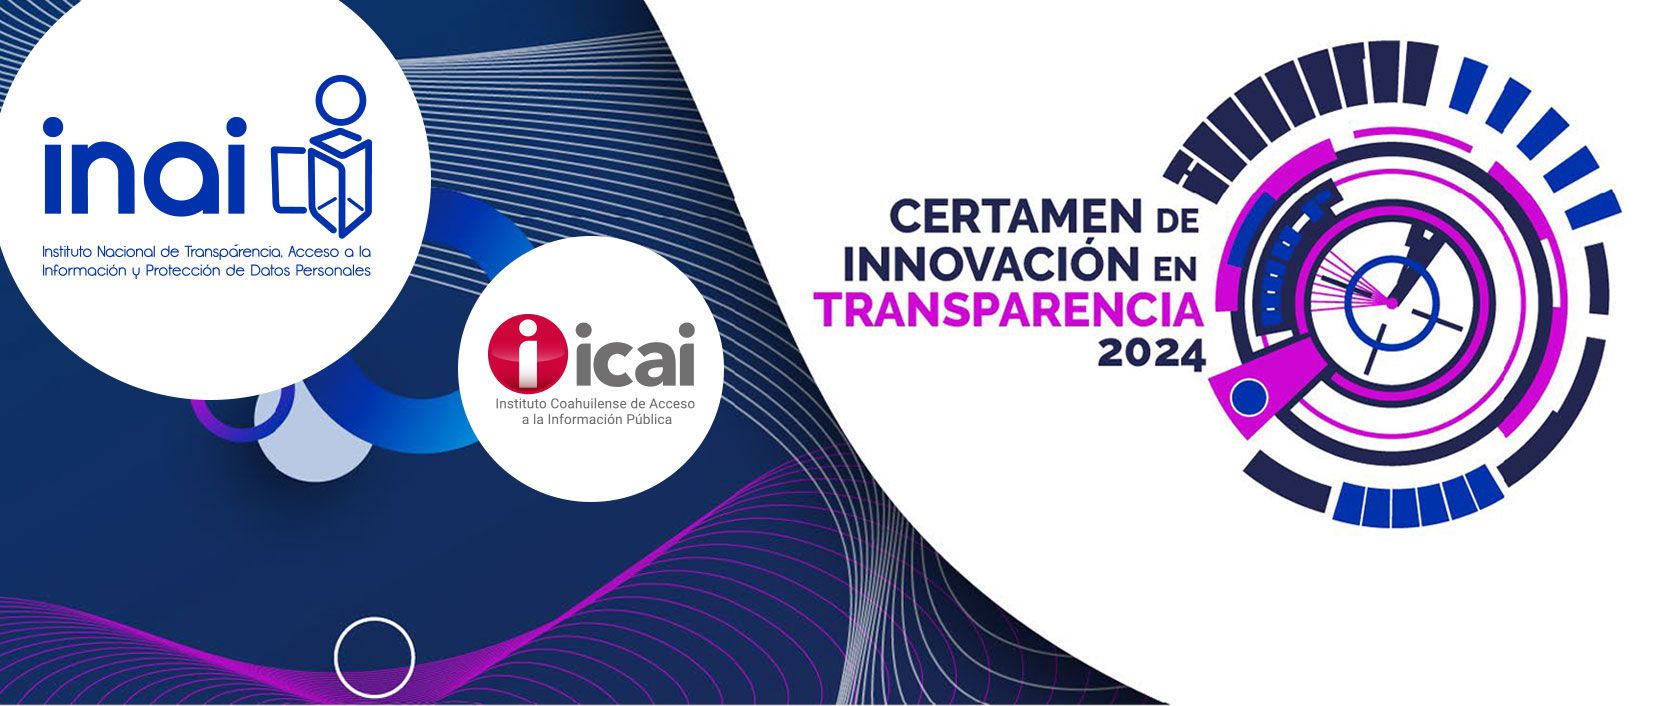 Certamen de Innovación en Transparencia 2024